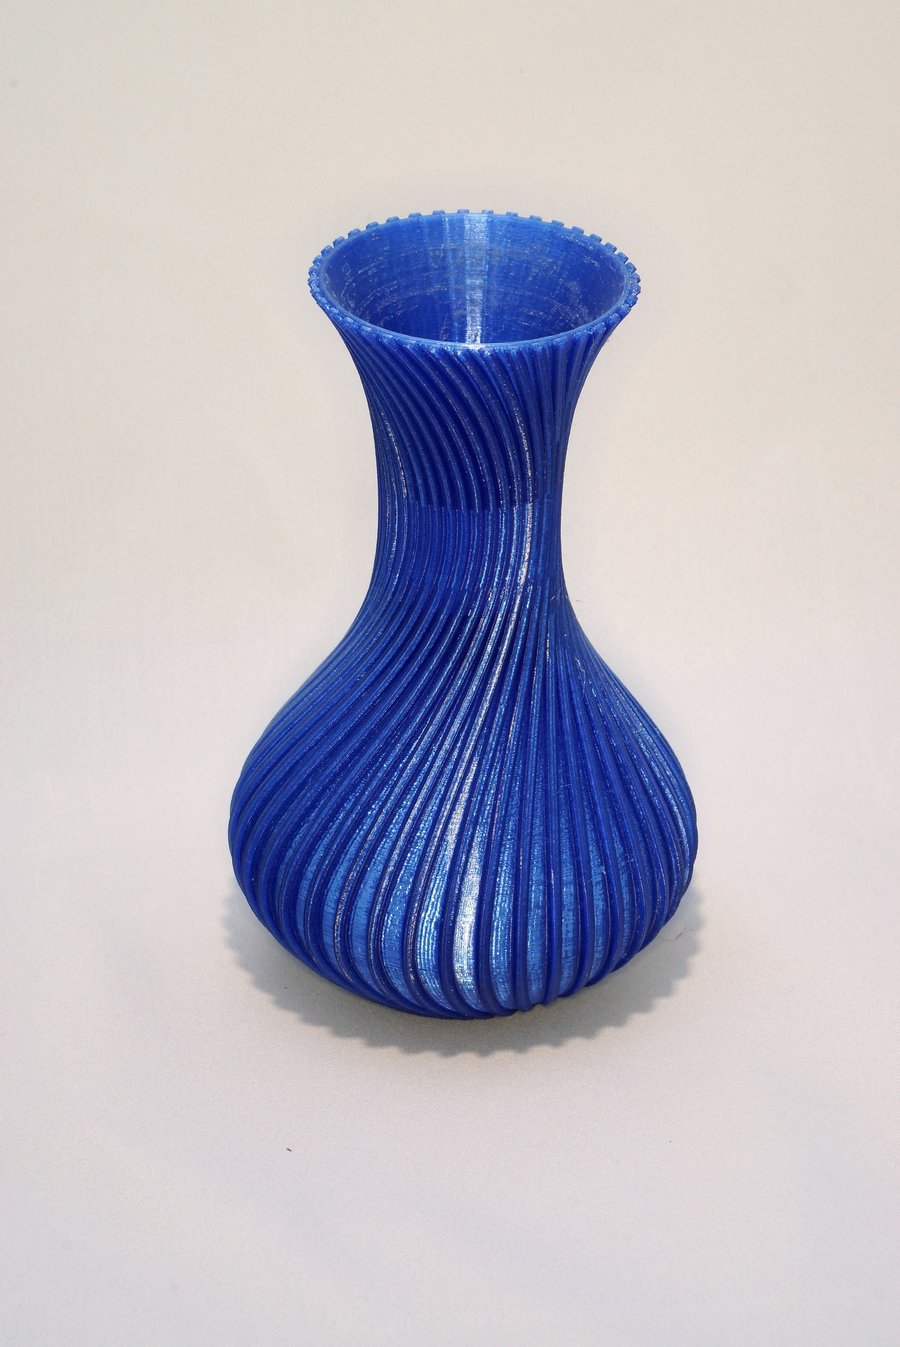 3D printed vase